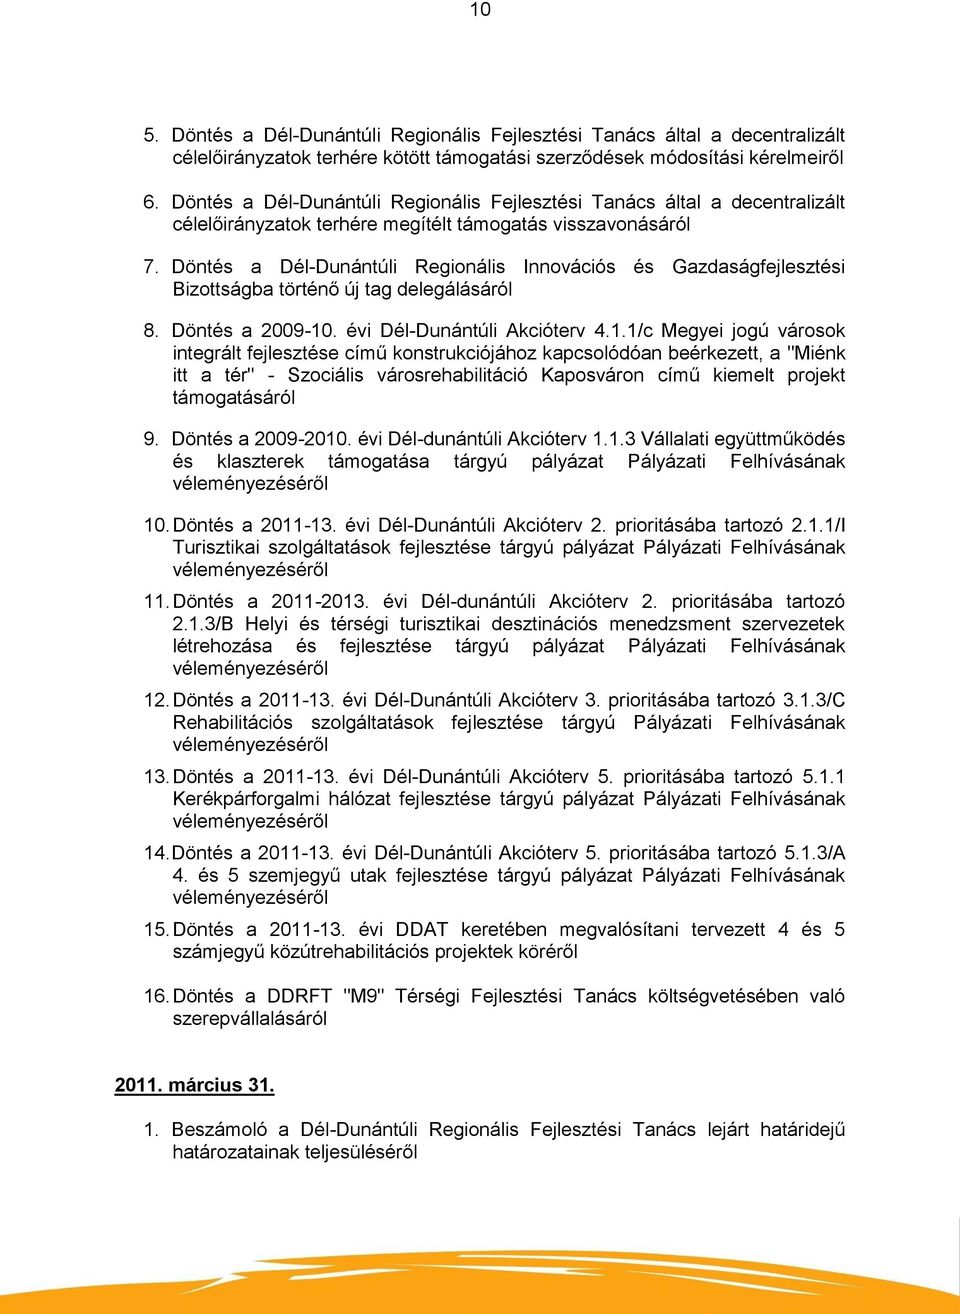 Döntés a Dél-Dunántúli Regionális Innovációs és Gazdaságfejlesztési Bizottságba történő új tag delegálásáról 8. Döntés a 2009-10